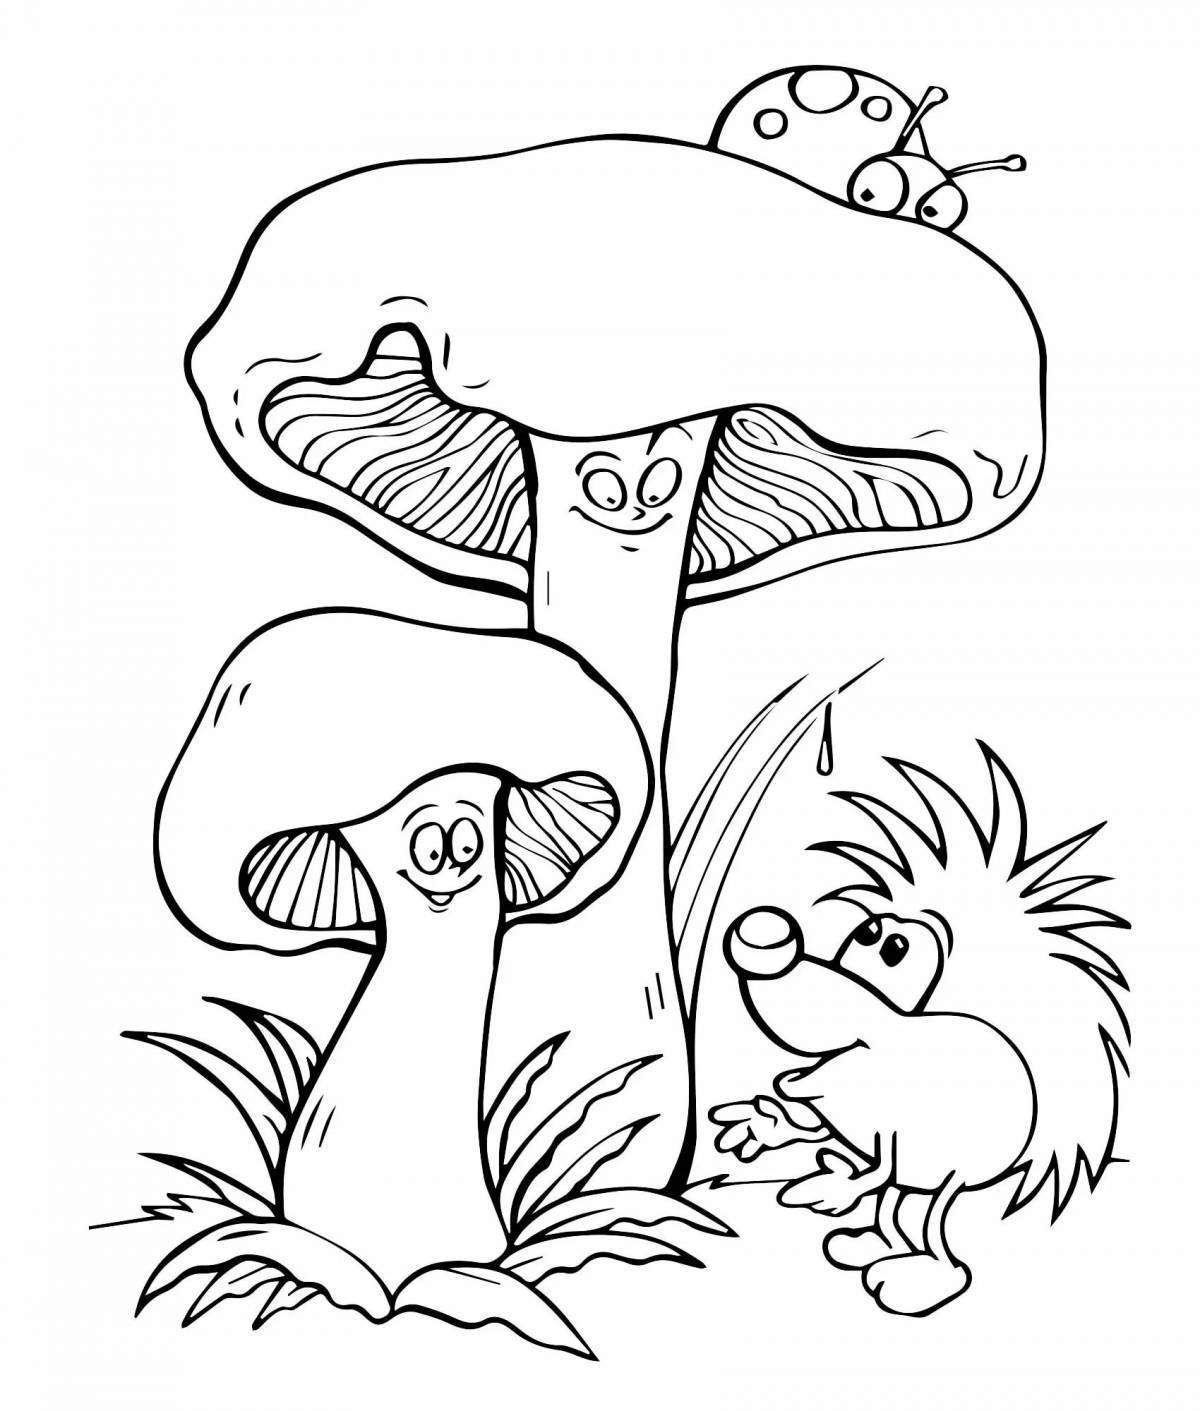 Великолепная раскраска грибов для детей 4-5 лет